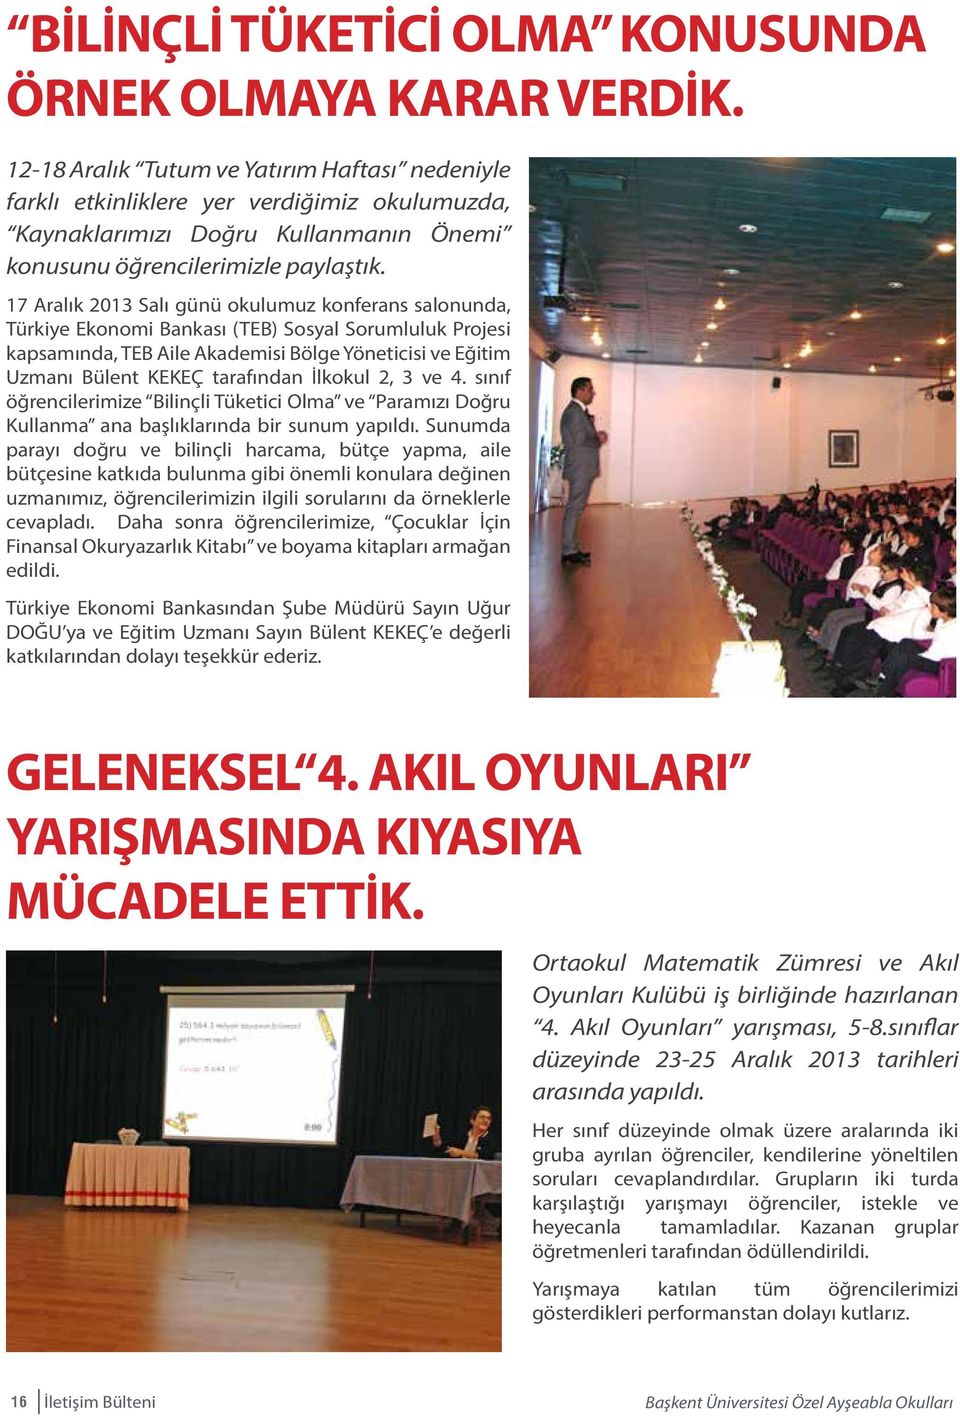 17 Aralık 2013 Salı günü okulumuz konferans salonunda, Türkiye Ekonomi Bankası (TEB) Sosyal Sorumluluk Projesi kapsamında, TEB Aile Akademisi Bölge Yöneticisi ve Eğitim Uzmanı Bülent KEKEÇ tarafından